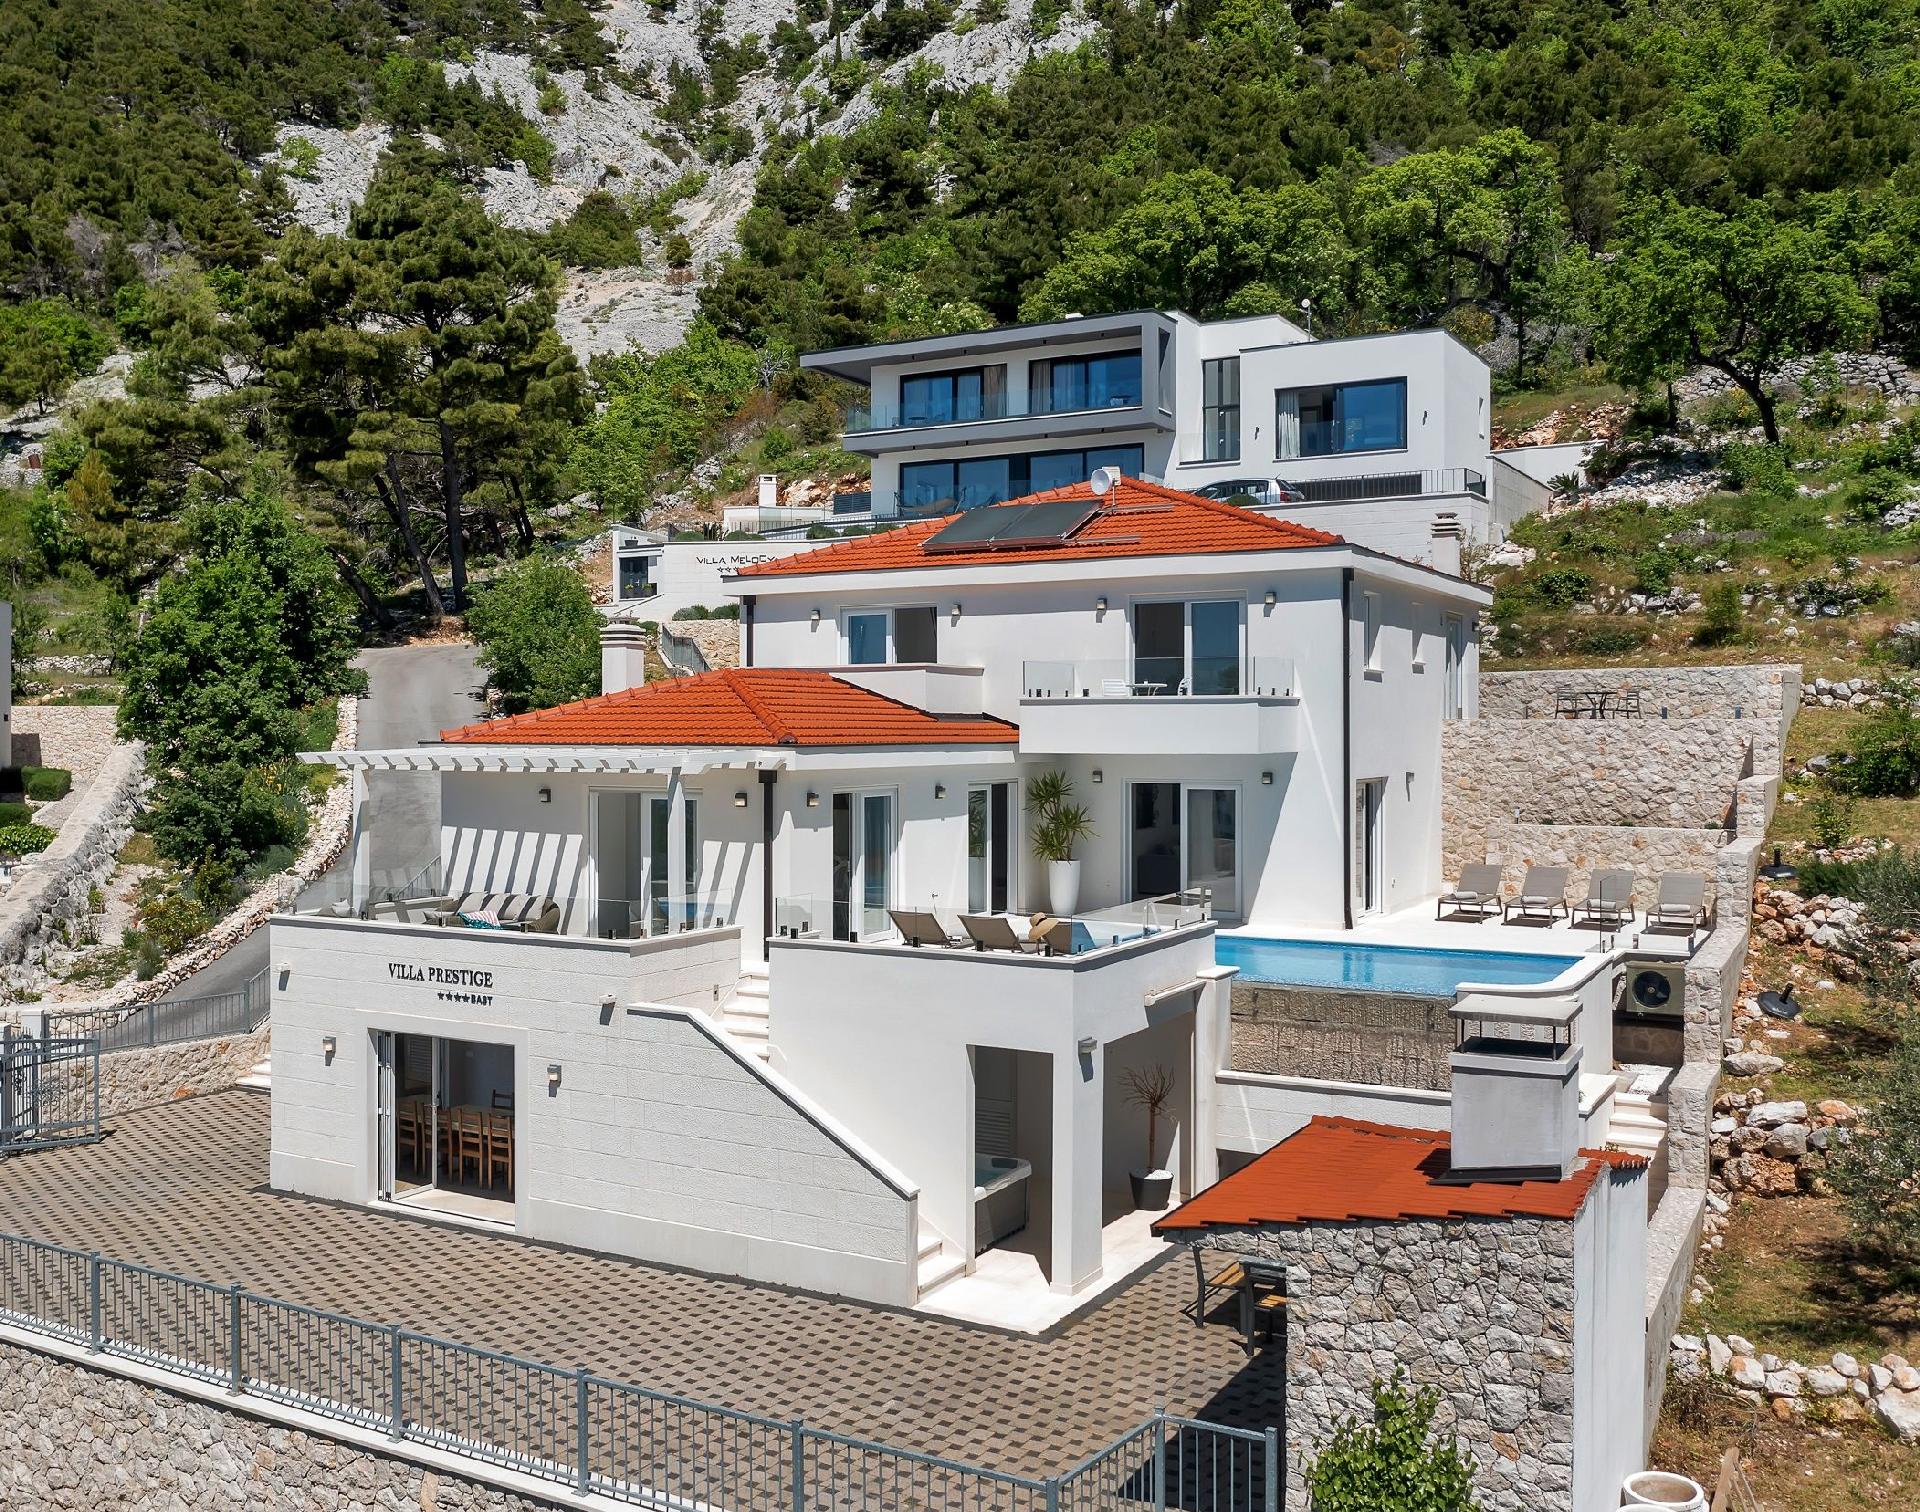 Ferienhaus mit Privatpool für 8 Personen  + 2 Ferienhaus in Dalmatien